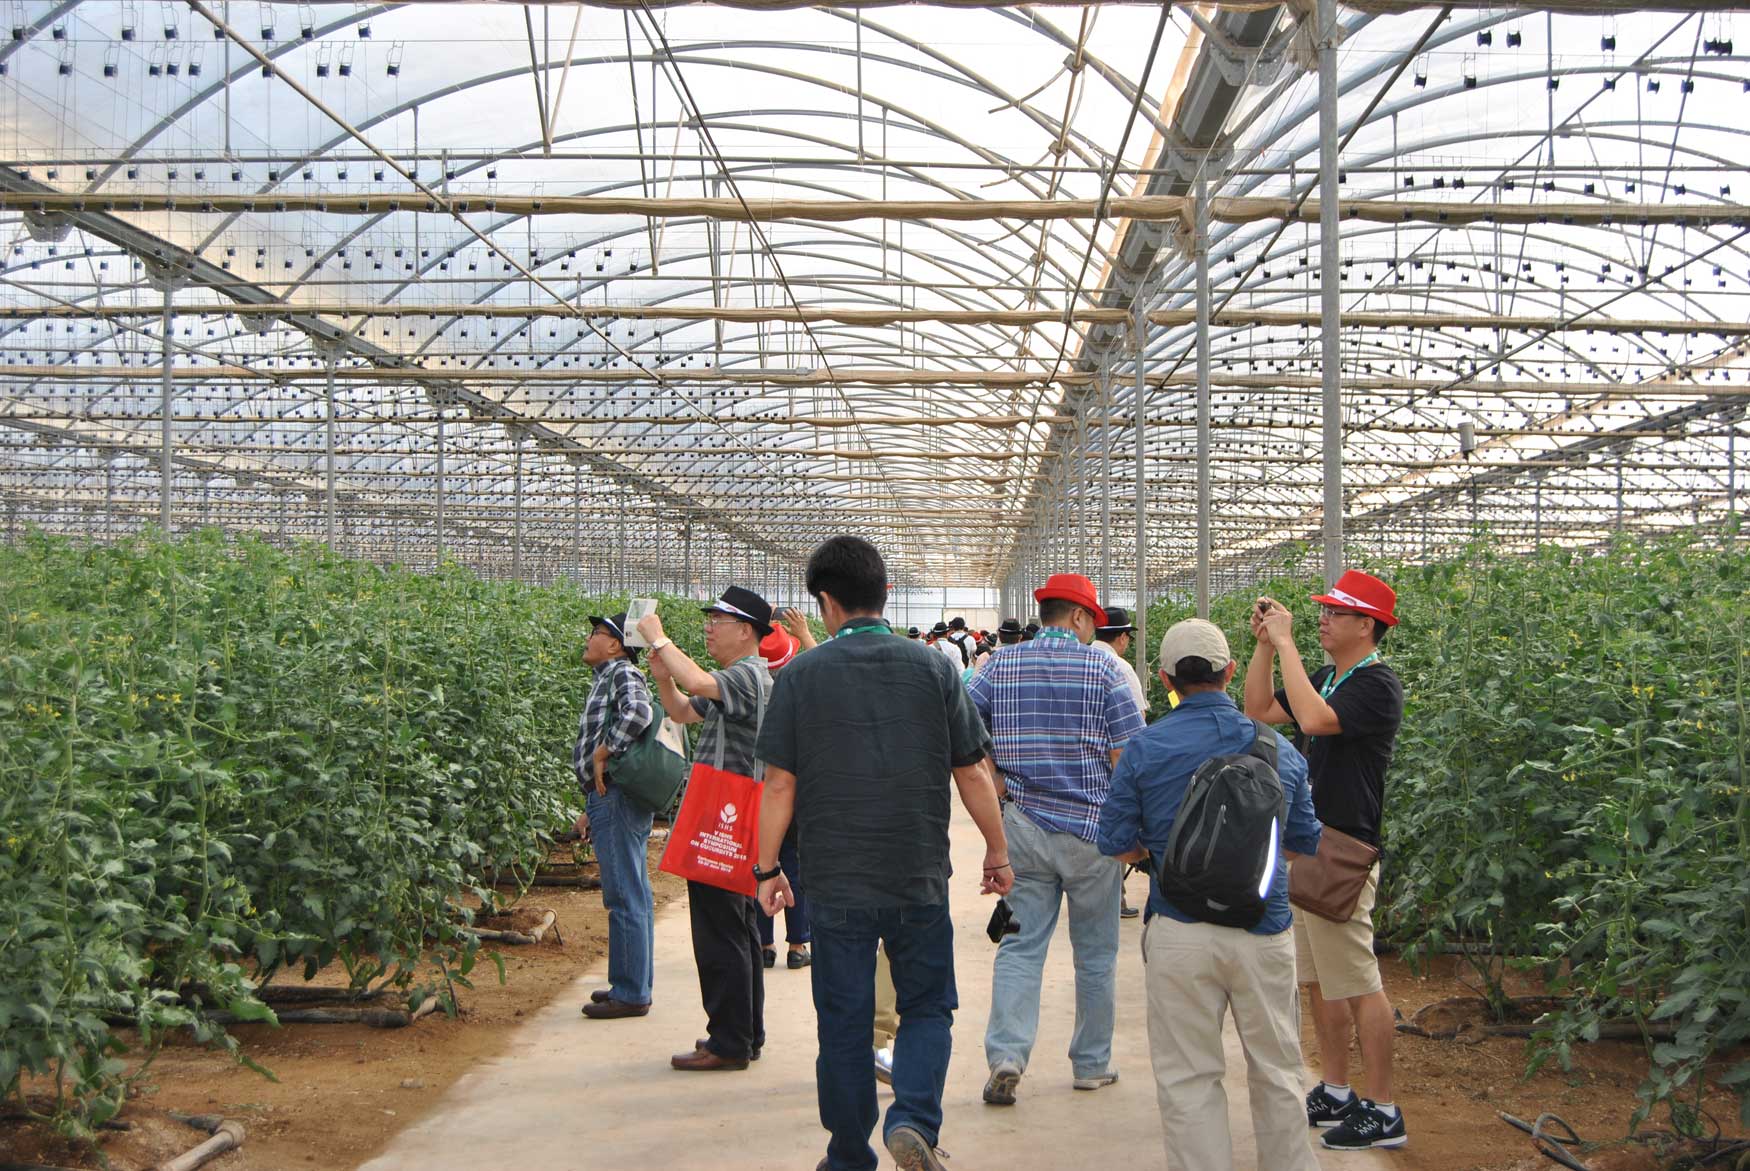 Visita de cultivos de pepino en invernadero, Agrcola Perichn